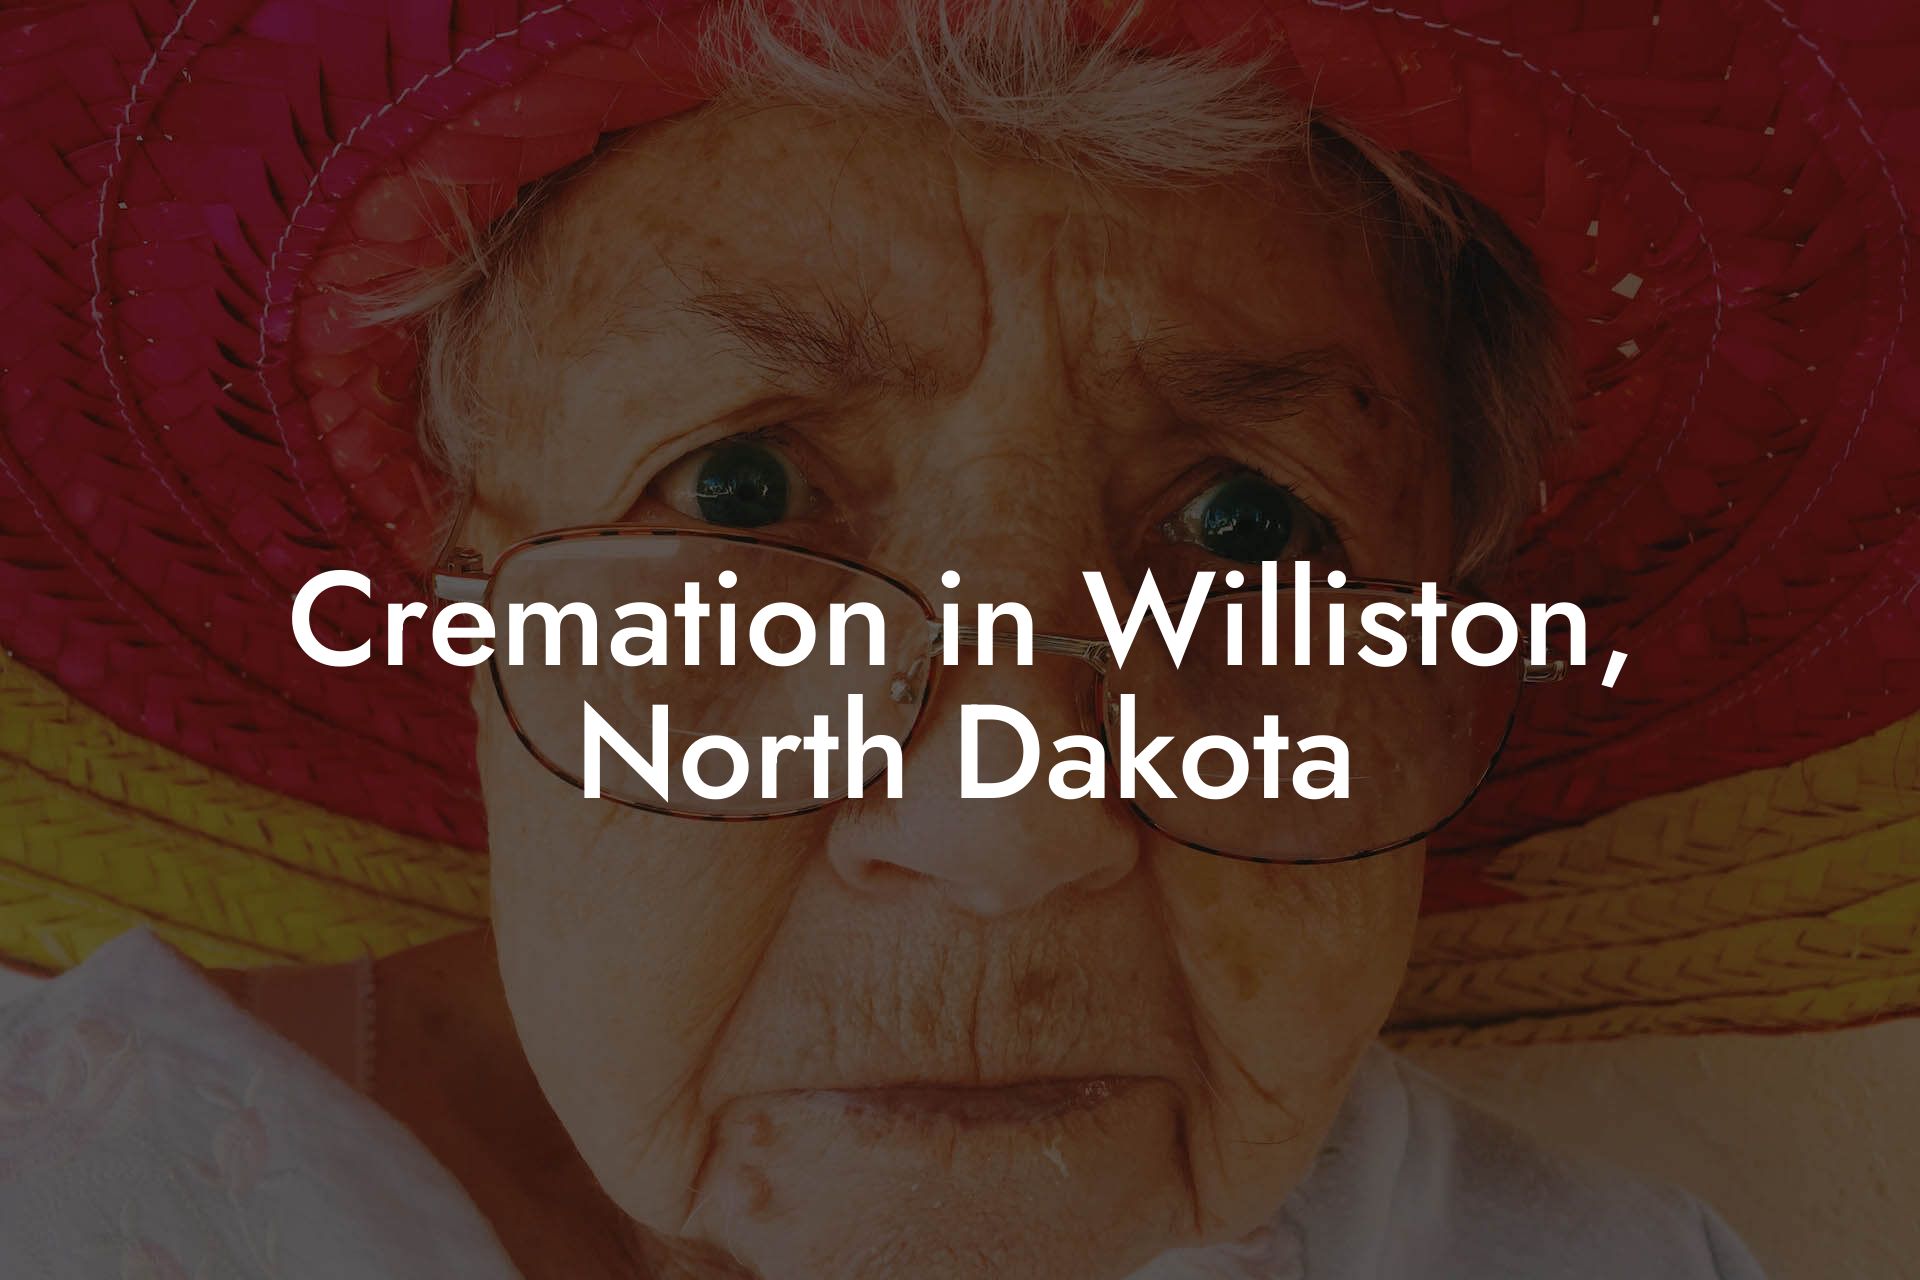 Cremation in Williston, North Dakota